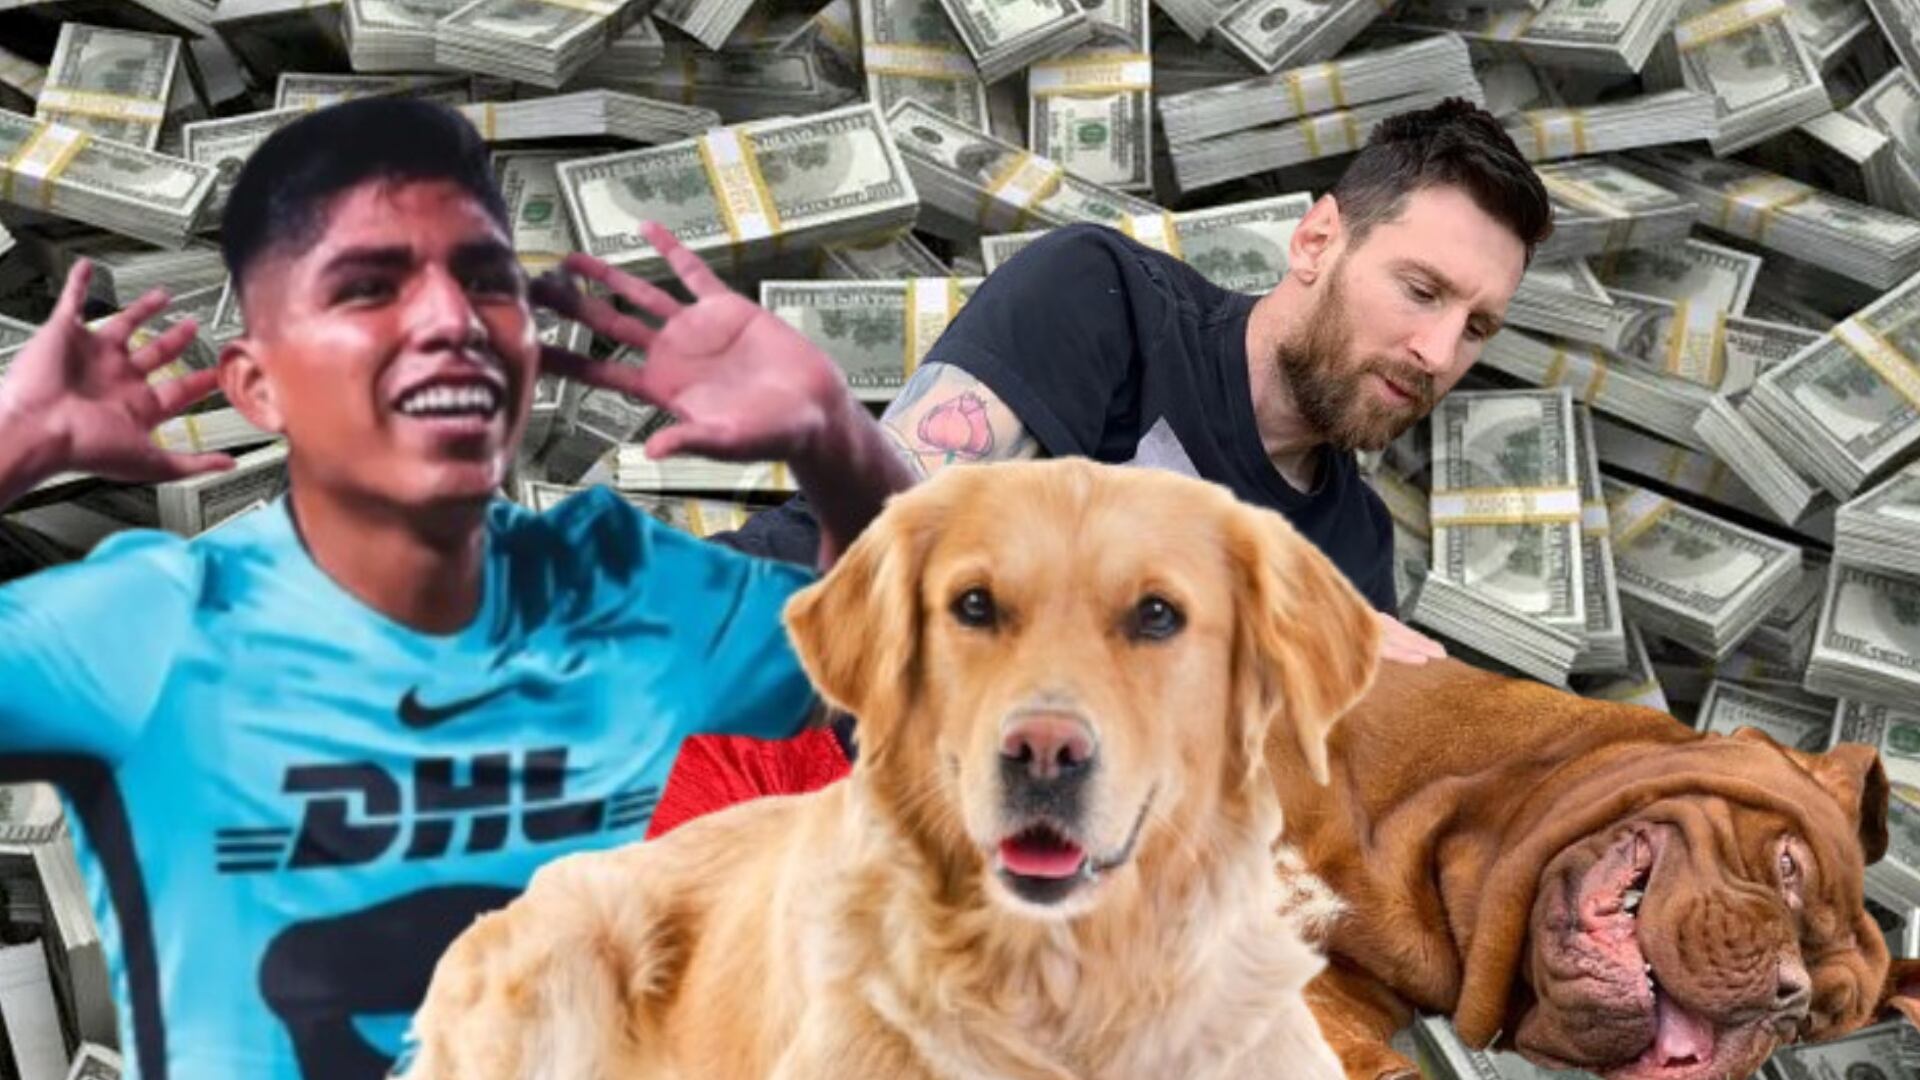 La diferencia de valor entre la mascota de Piero Quispe de Pumas y la de Messi